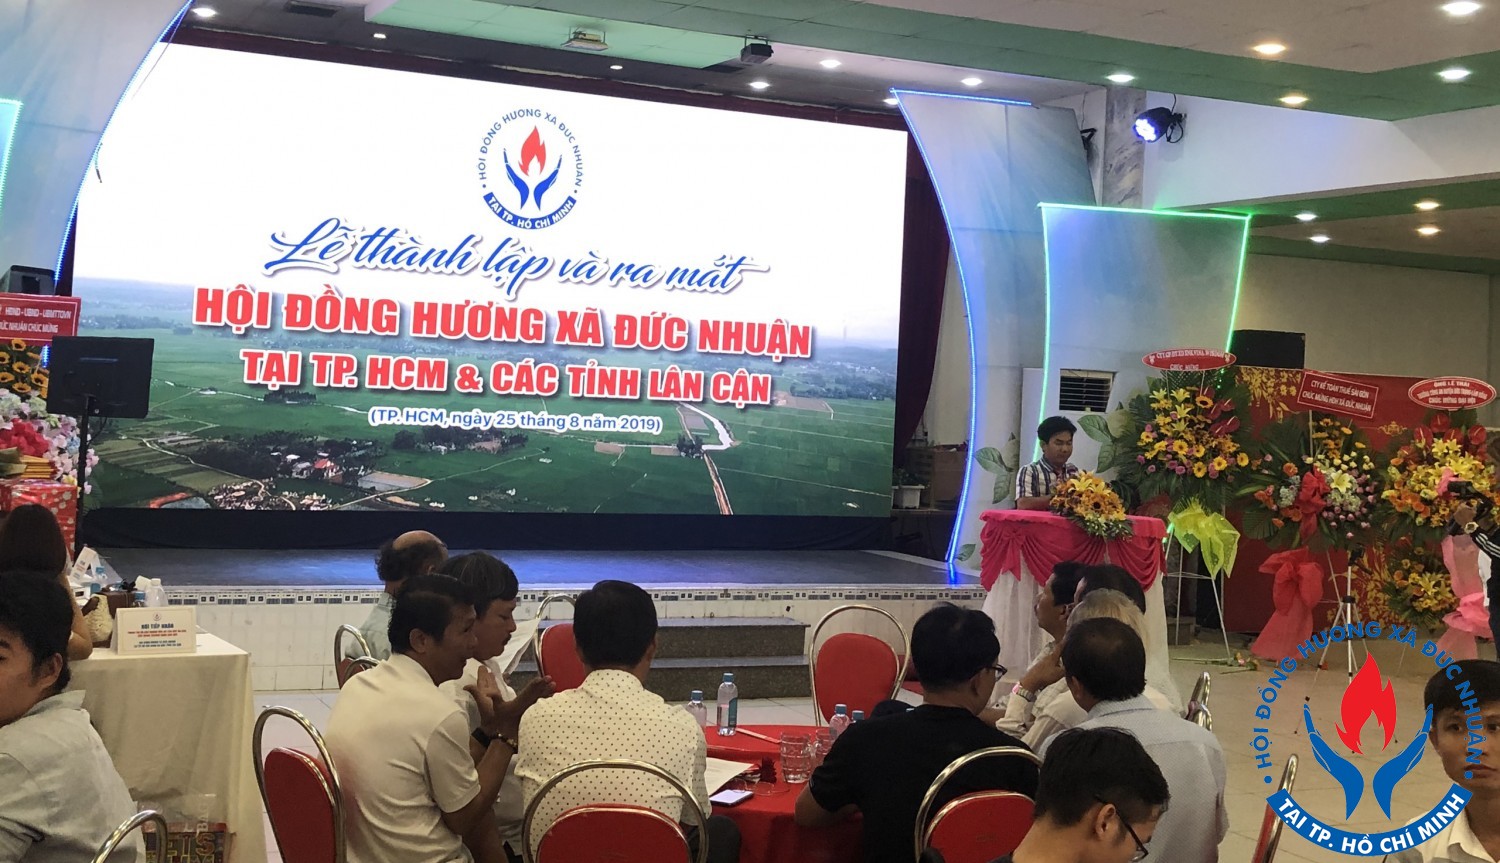 Buổi đại hội Hội Đồng Hương Đức Nhuận tại Tp Hồ Chí Minh và Các tỉnh lân cận diễn ra ấm cúng.